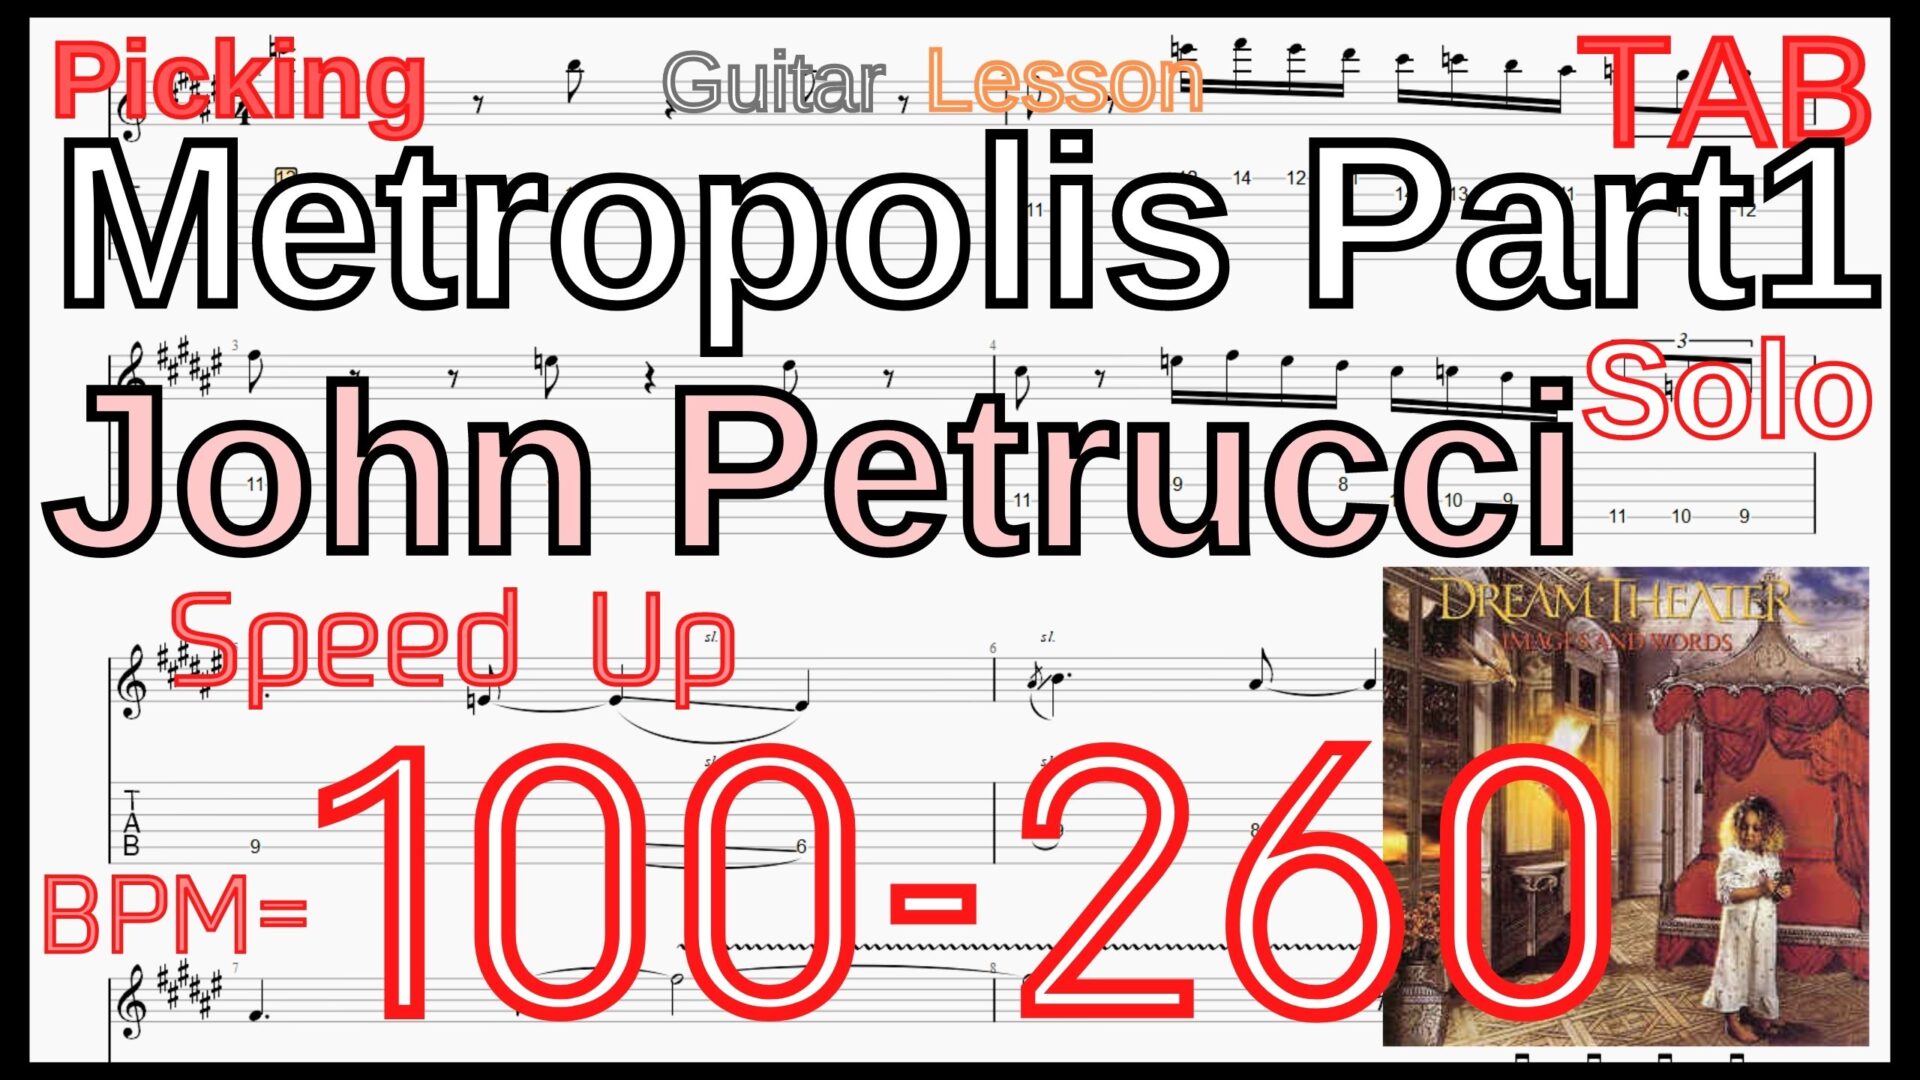 【ギターのピッキング上達練習】Metropolis Part1 / Dream Theater Guitar Solo メトロポリス ドリームシアター ギターソロ 練習 John Petrucci Lesson【Picking】ギターのピッキングが上手くなりたい人にオススメのフレーズ特集｡初心者さんにもオススメ！